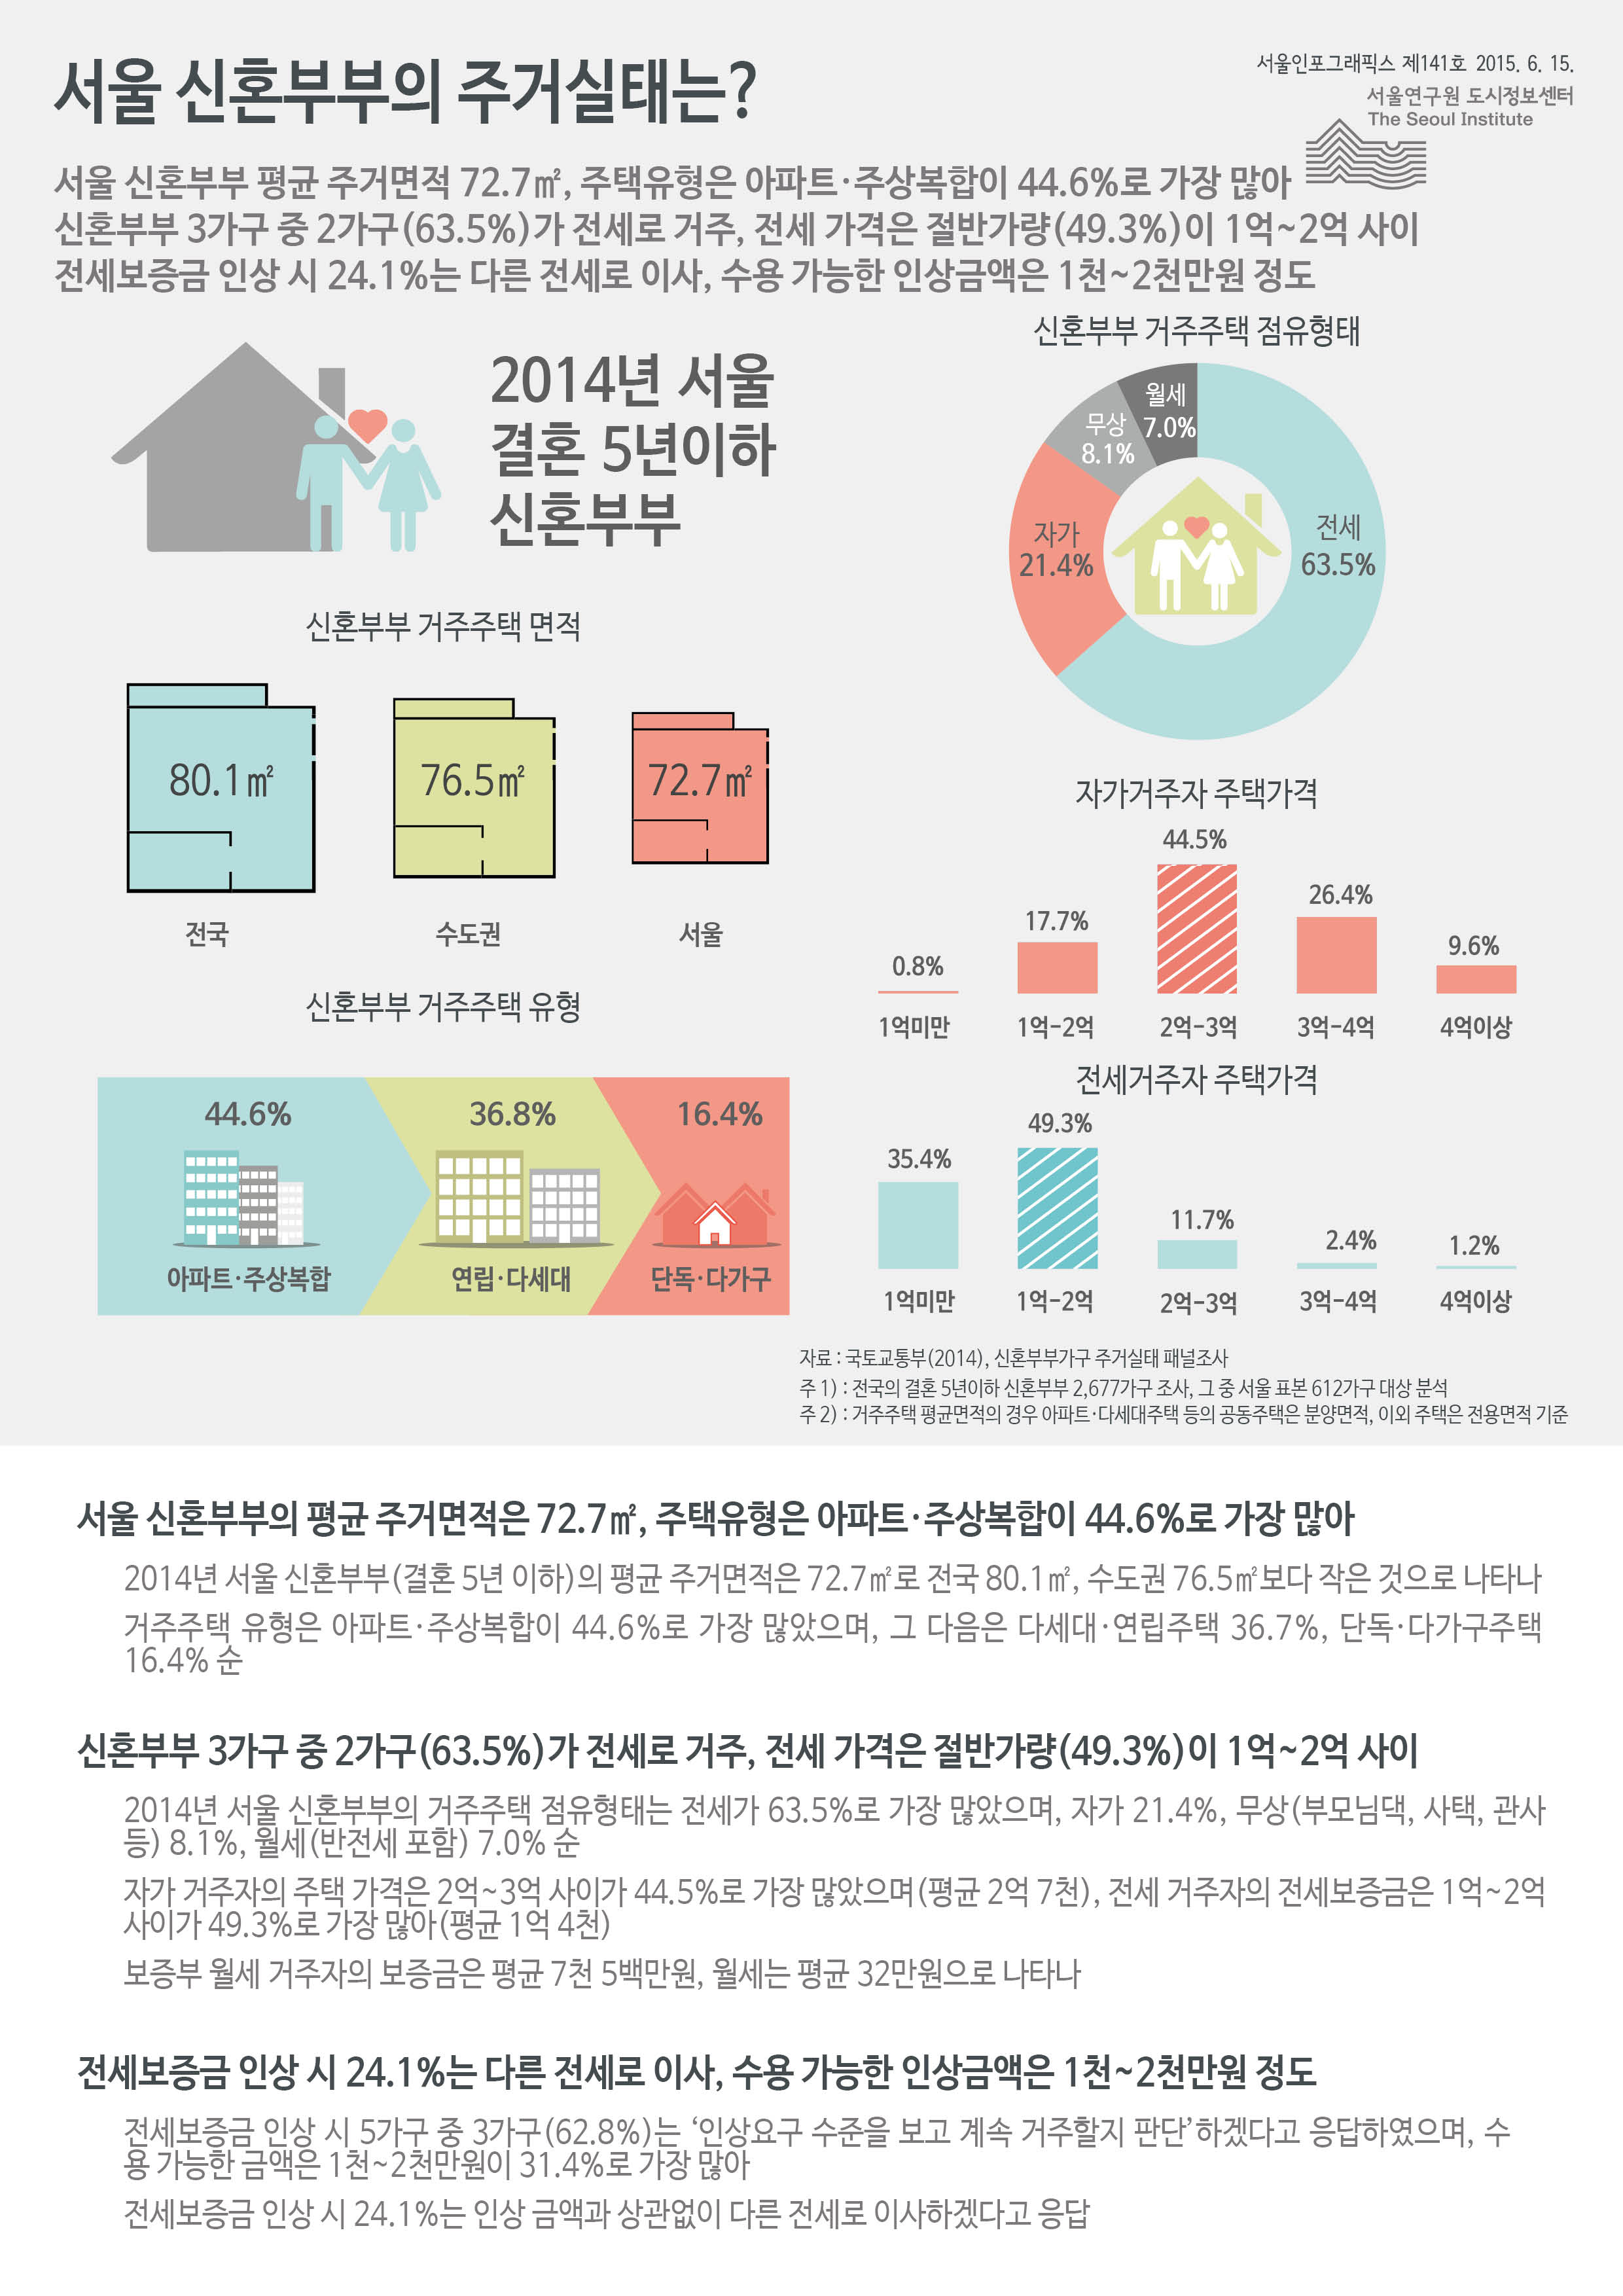 서울 신혼부부의 주거실태는? 서울인포그래픽스 제141호 2015년 6월 15일 서울 신혼부부의 평균 주거면적은 72.7㎡, 주택유형은 아파트·주상복합이 44.6%로 가장 많음. 신혼부부 3가구 중 2가구(63.5%)가 전세로 거주, 전세 가격은 절반가량(49.3%)이 1억~2억 사이. 전세보증금 인상 시 24.1%는 다른 전세로 이사, 수용 가능한 인상금액은 1천~2천만원 정도임으로 정리될 수 있습니다. 인포그래픽으로 제공되는 그래픽은 하단에 표로 자세히 제공됩니다.